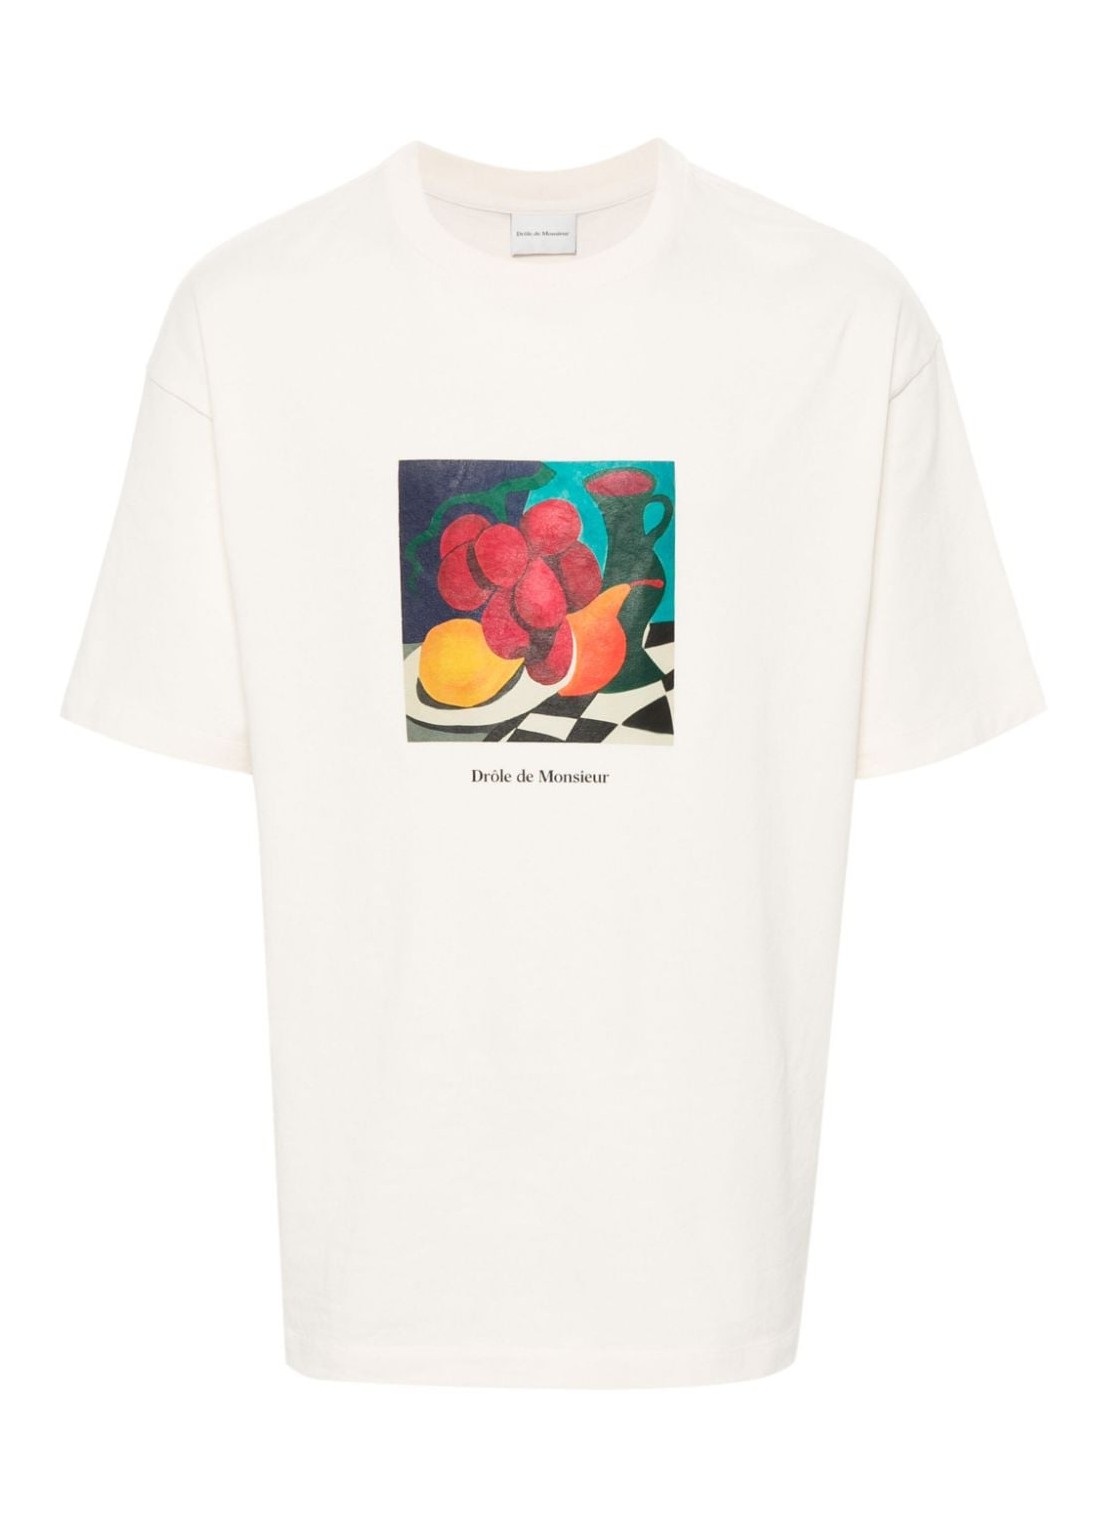 Camiseta drole de monsieur t-shirt manle t-shirt nature morte - dts181co134cm cream talla beige
 